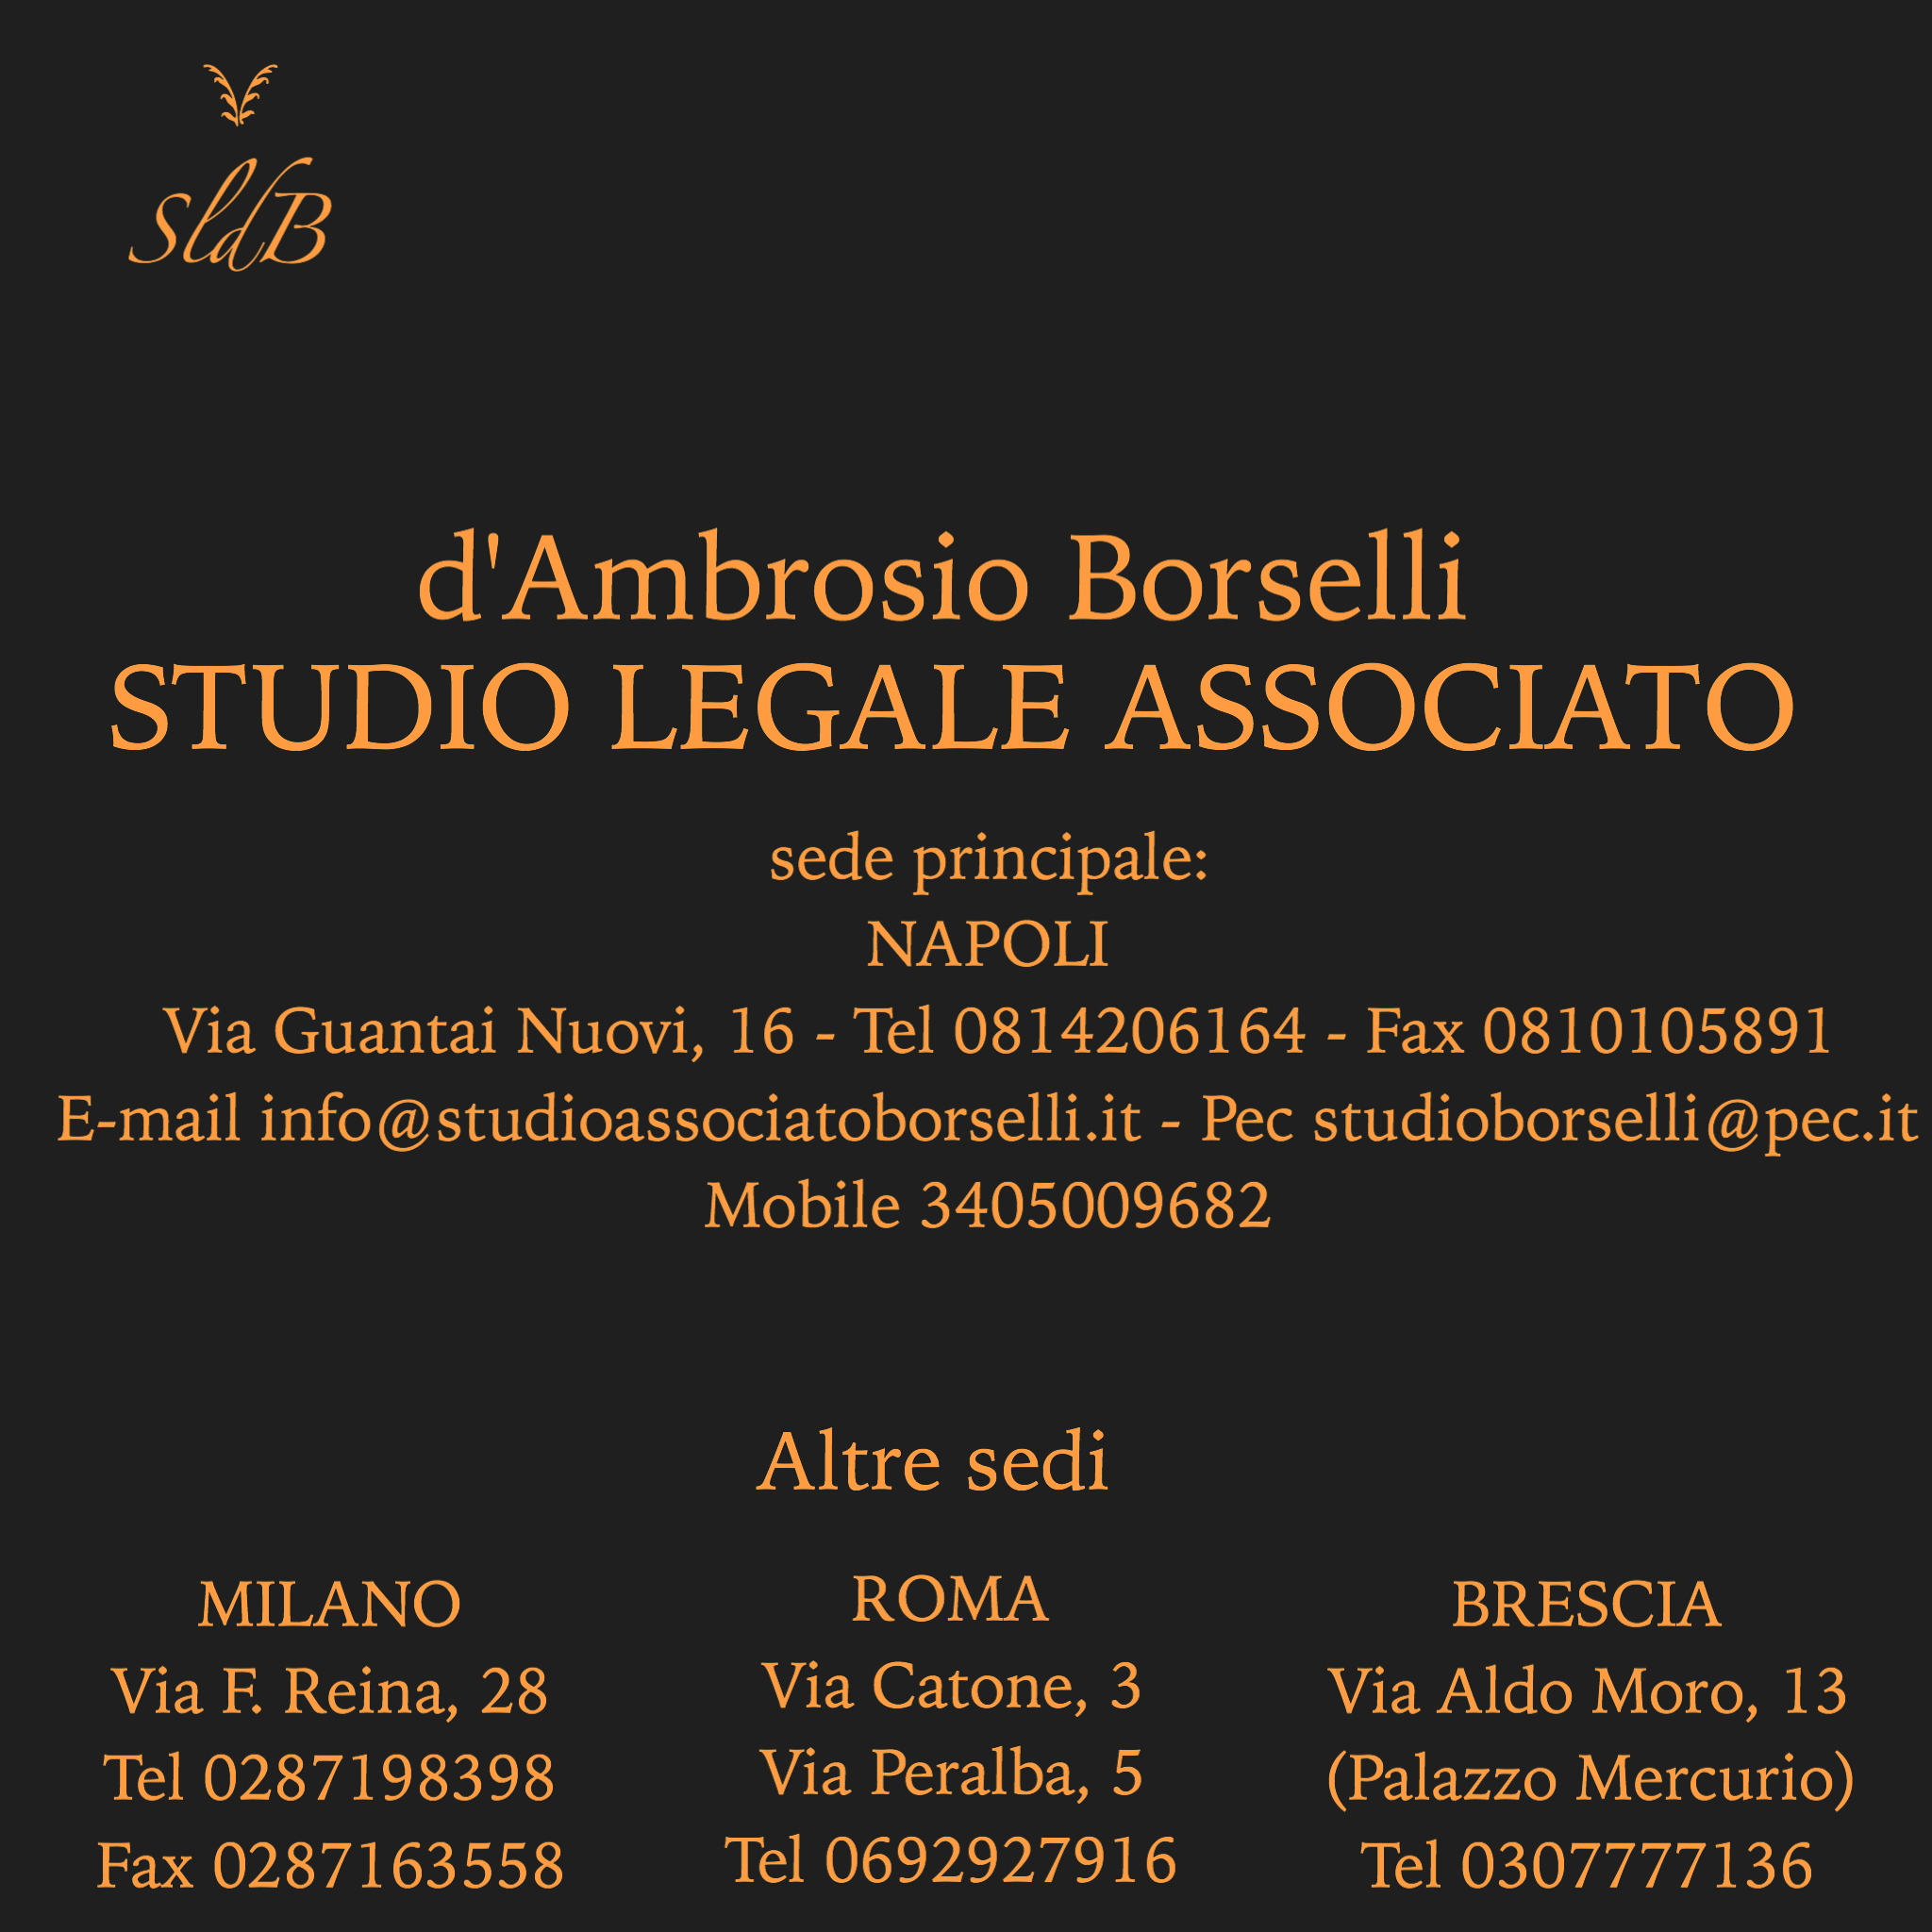 Studio Legale associato d'Ambrosio Borselli